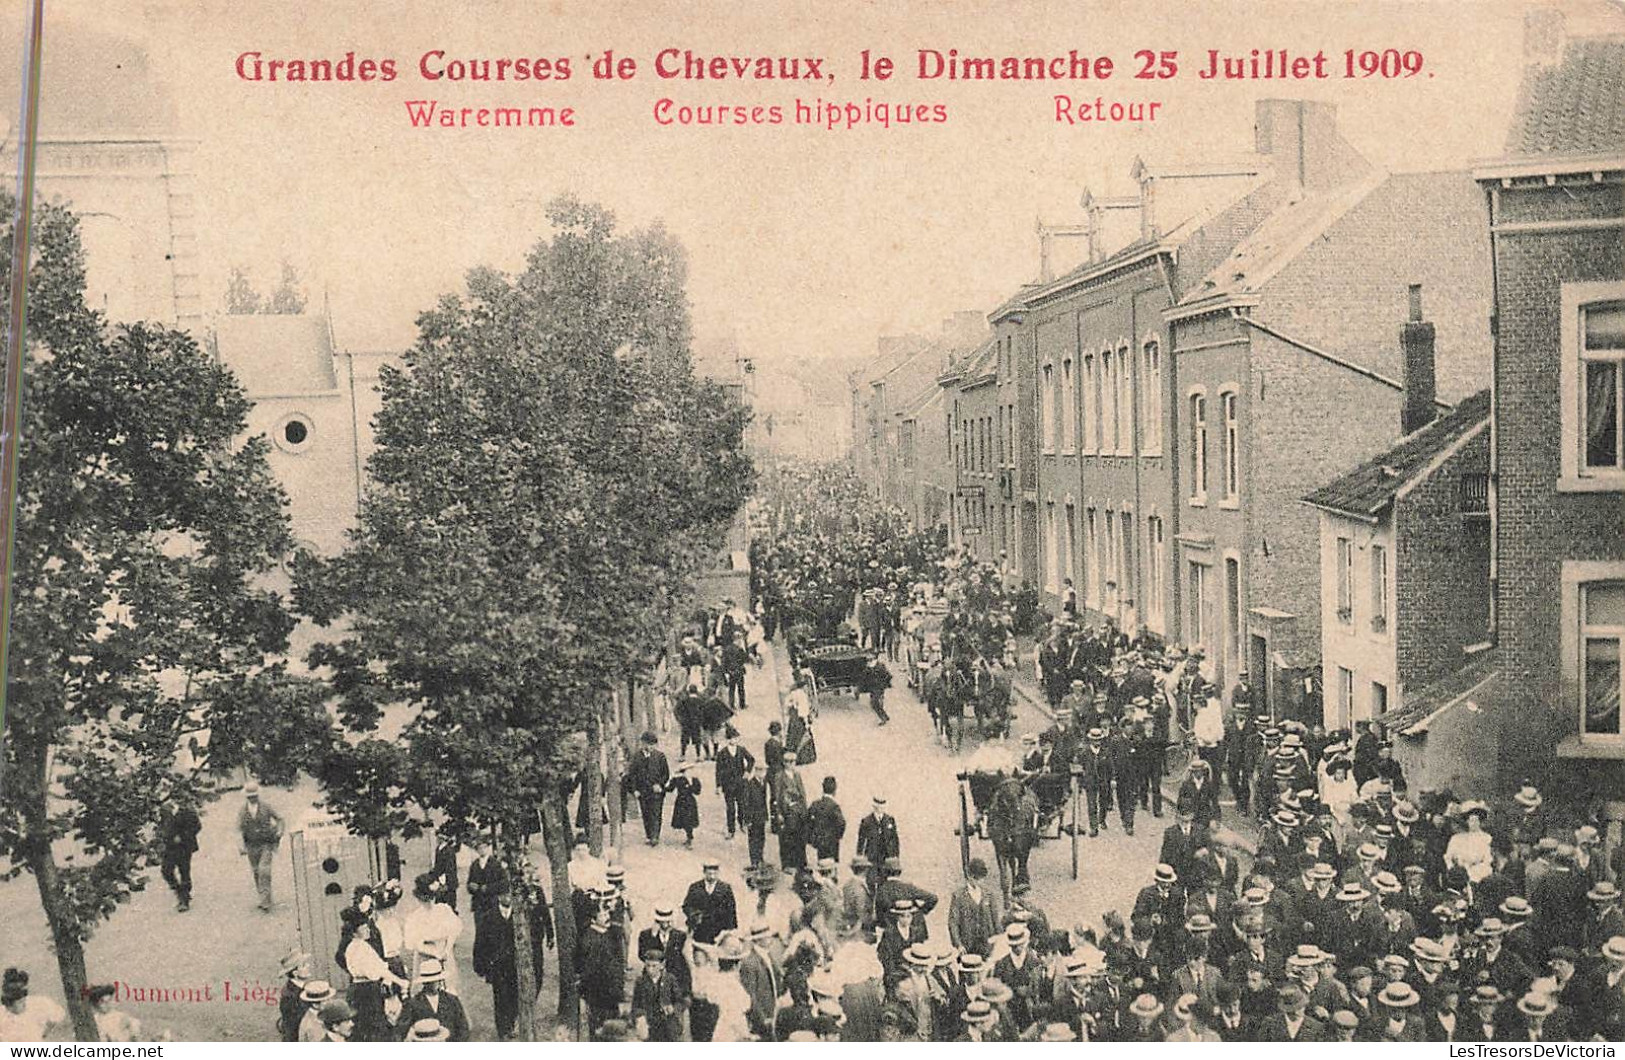 Belgique - Waremme - Grandes Courses De Chevaux Le Dimanche 25 Juillet 1909 - Dumont - Carte Postale Ancienne - Borgworm